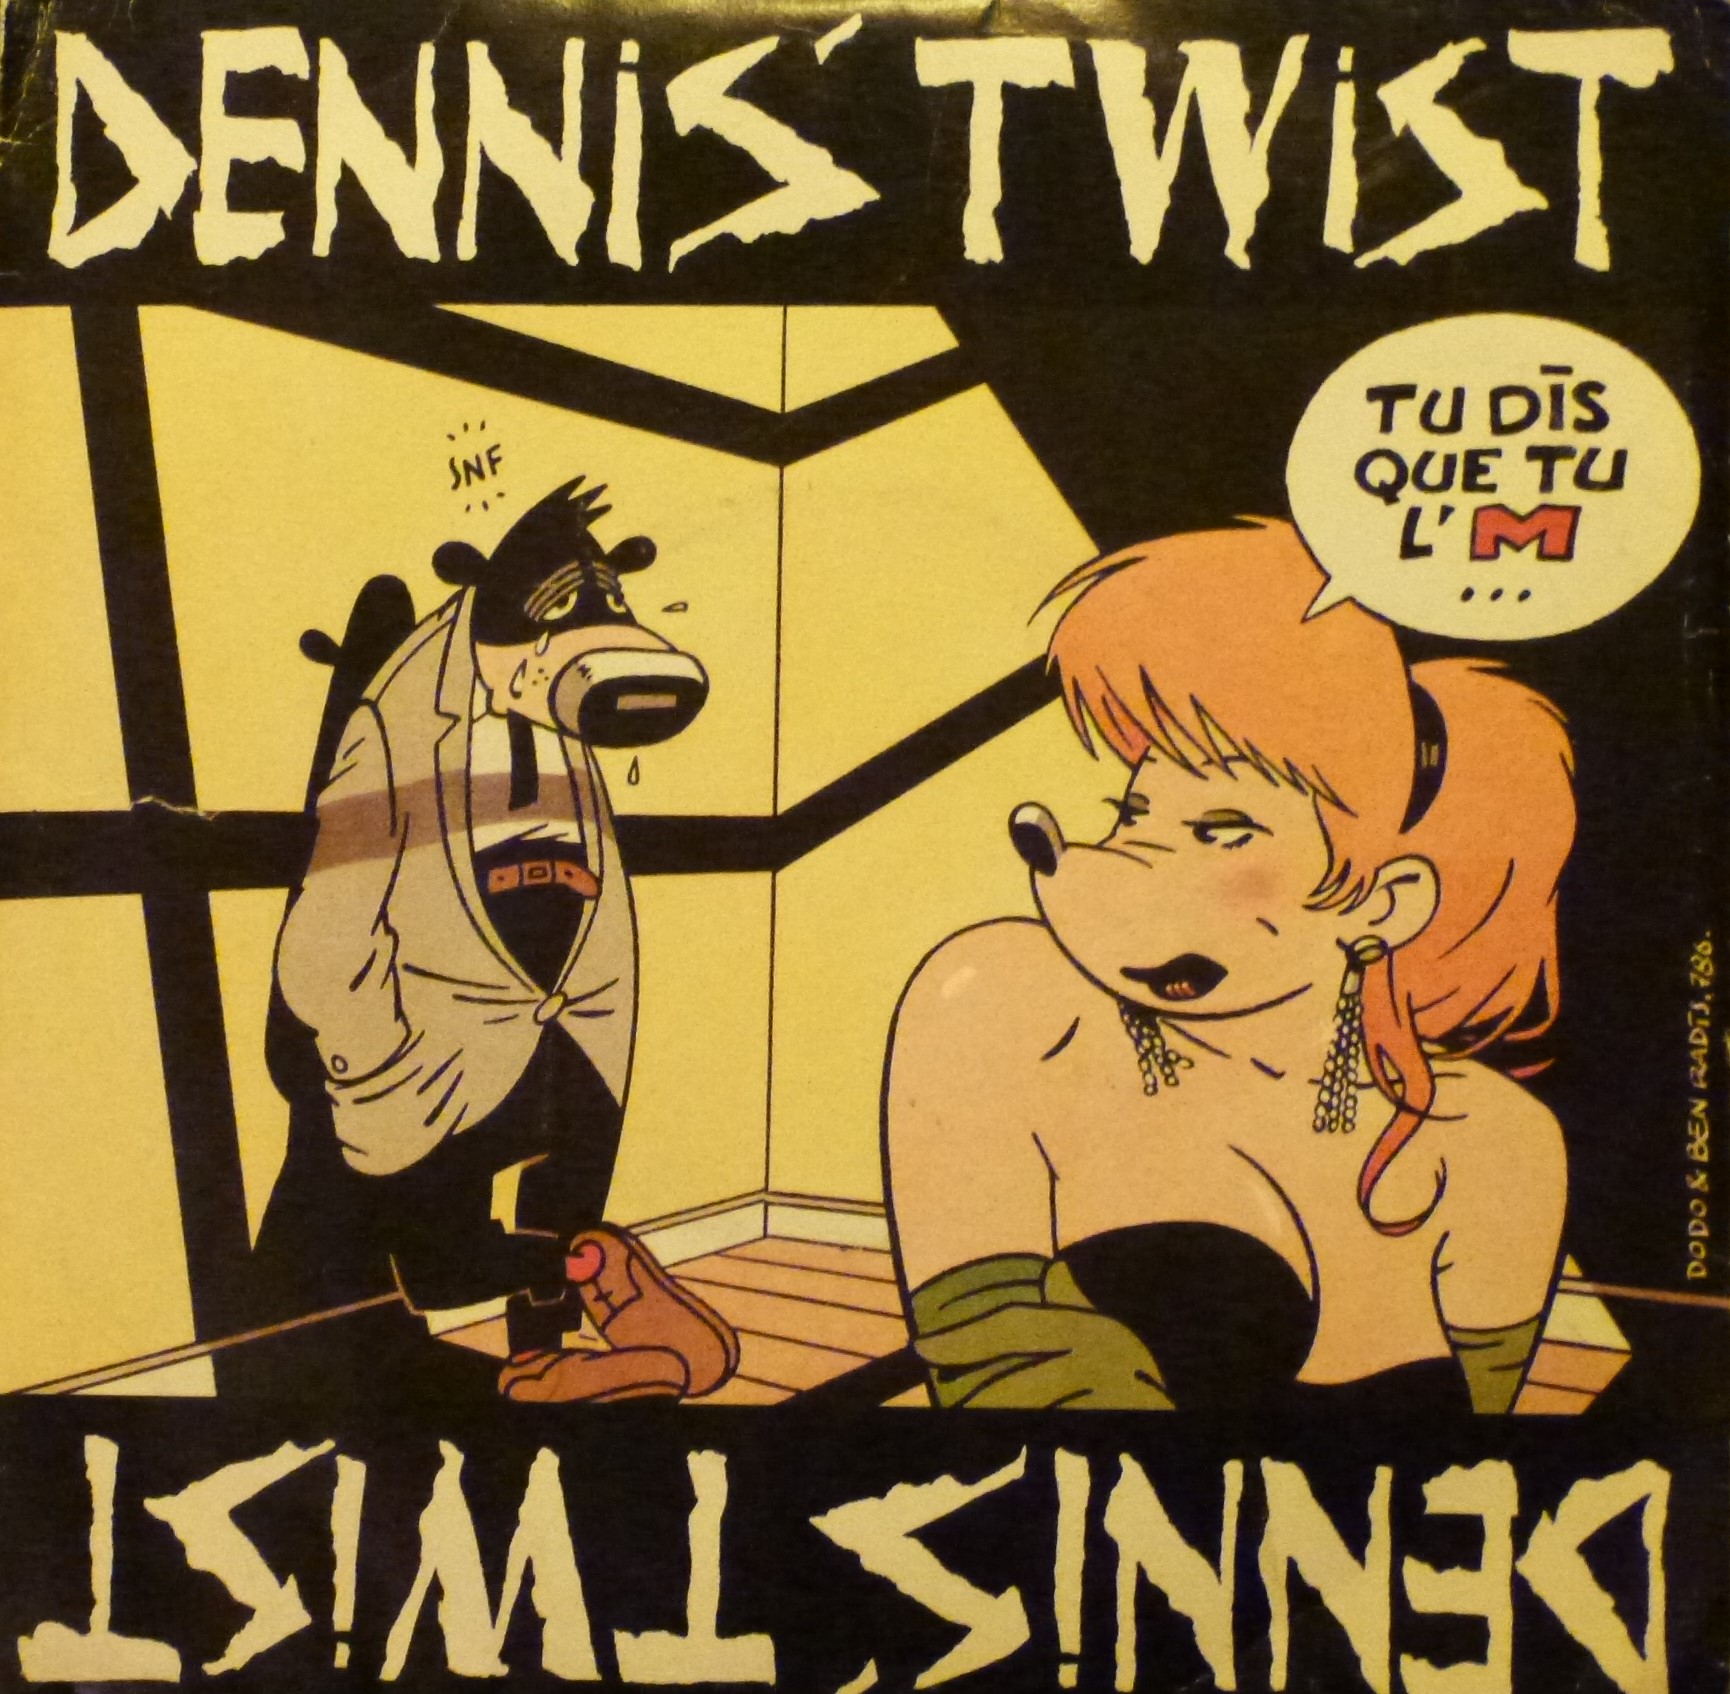 Dennis Twist, Tu dis que tu l'M